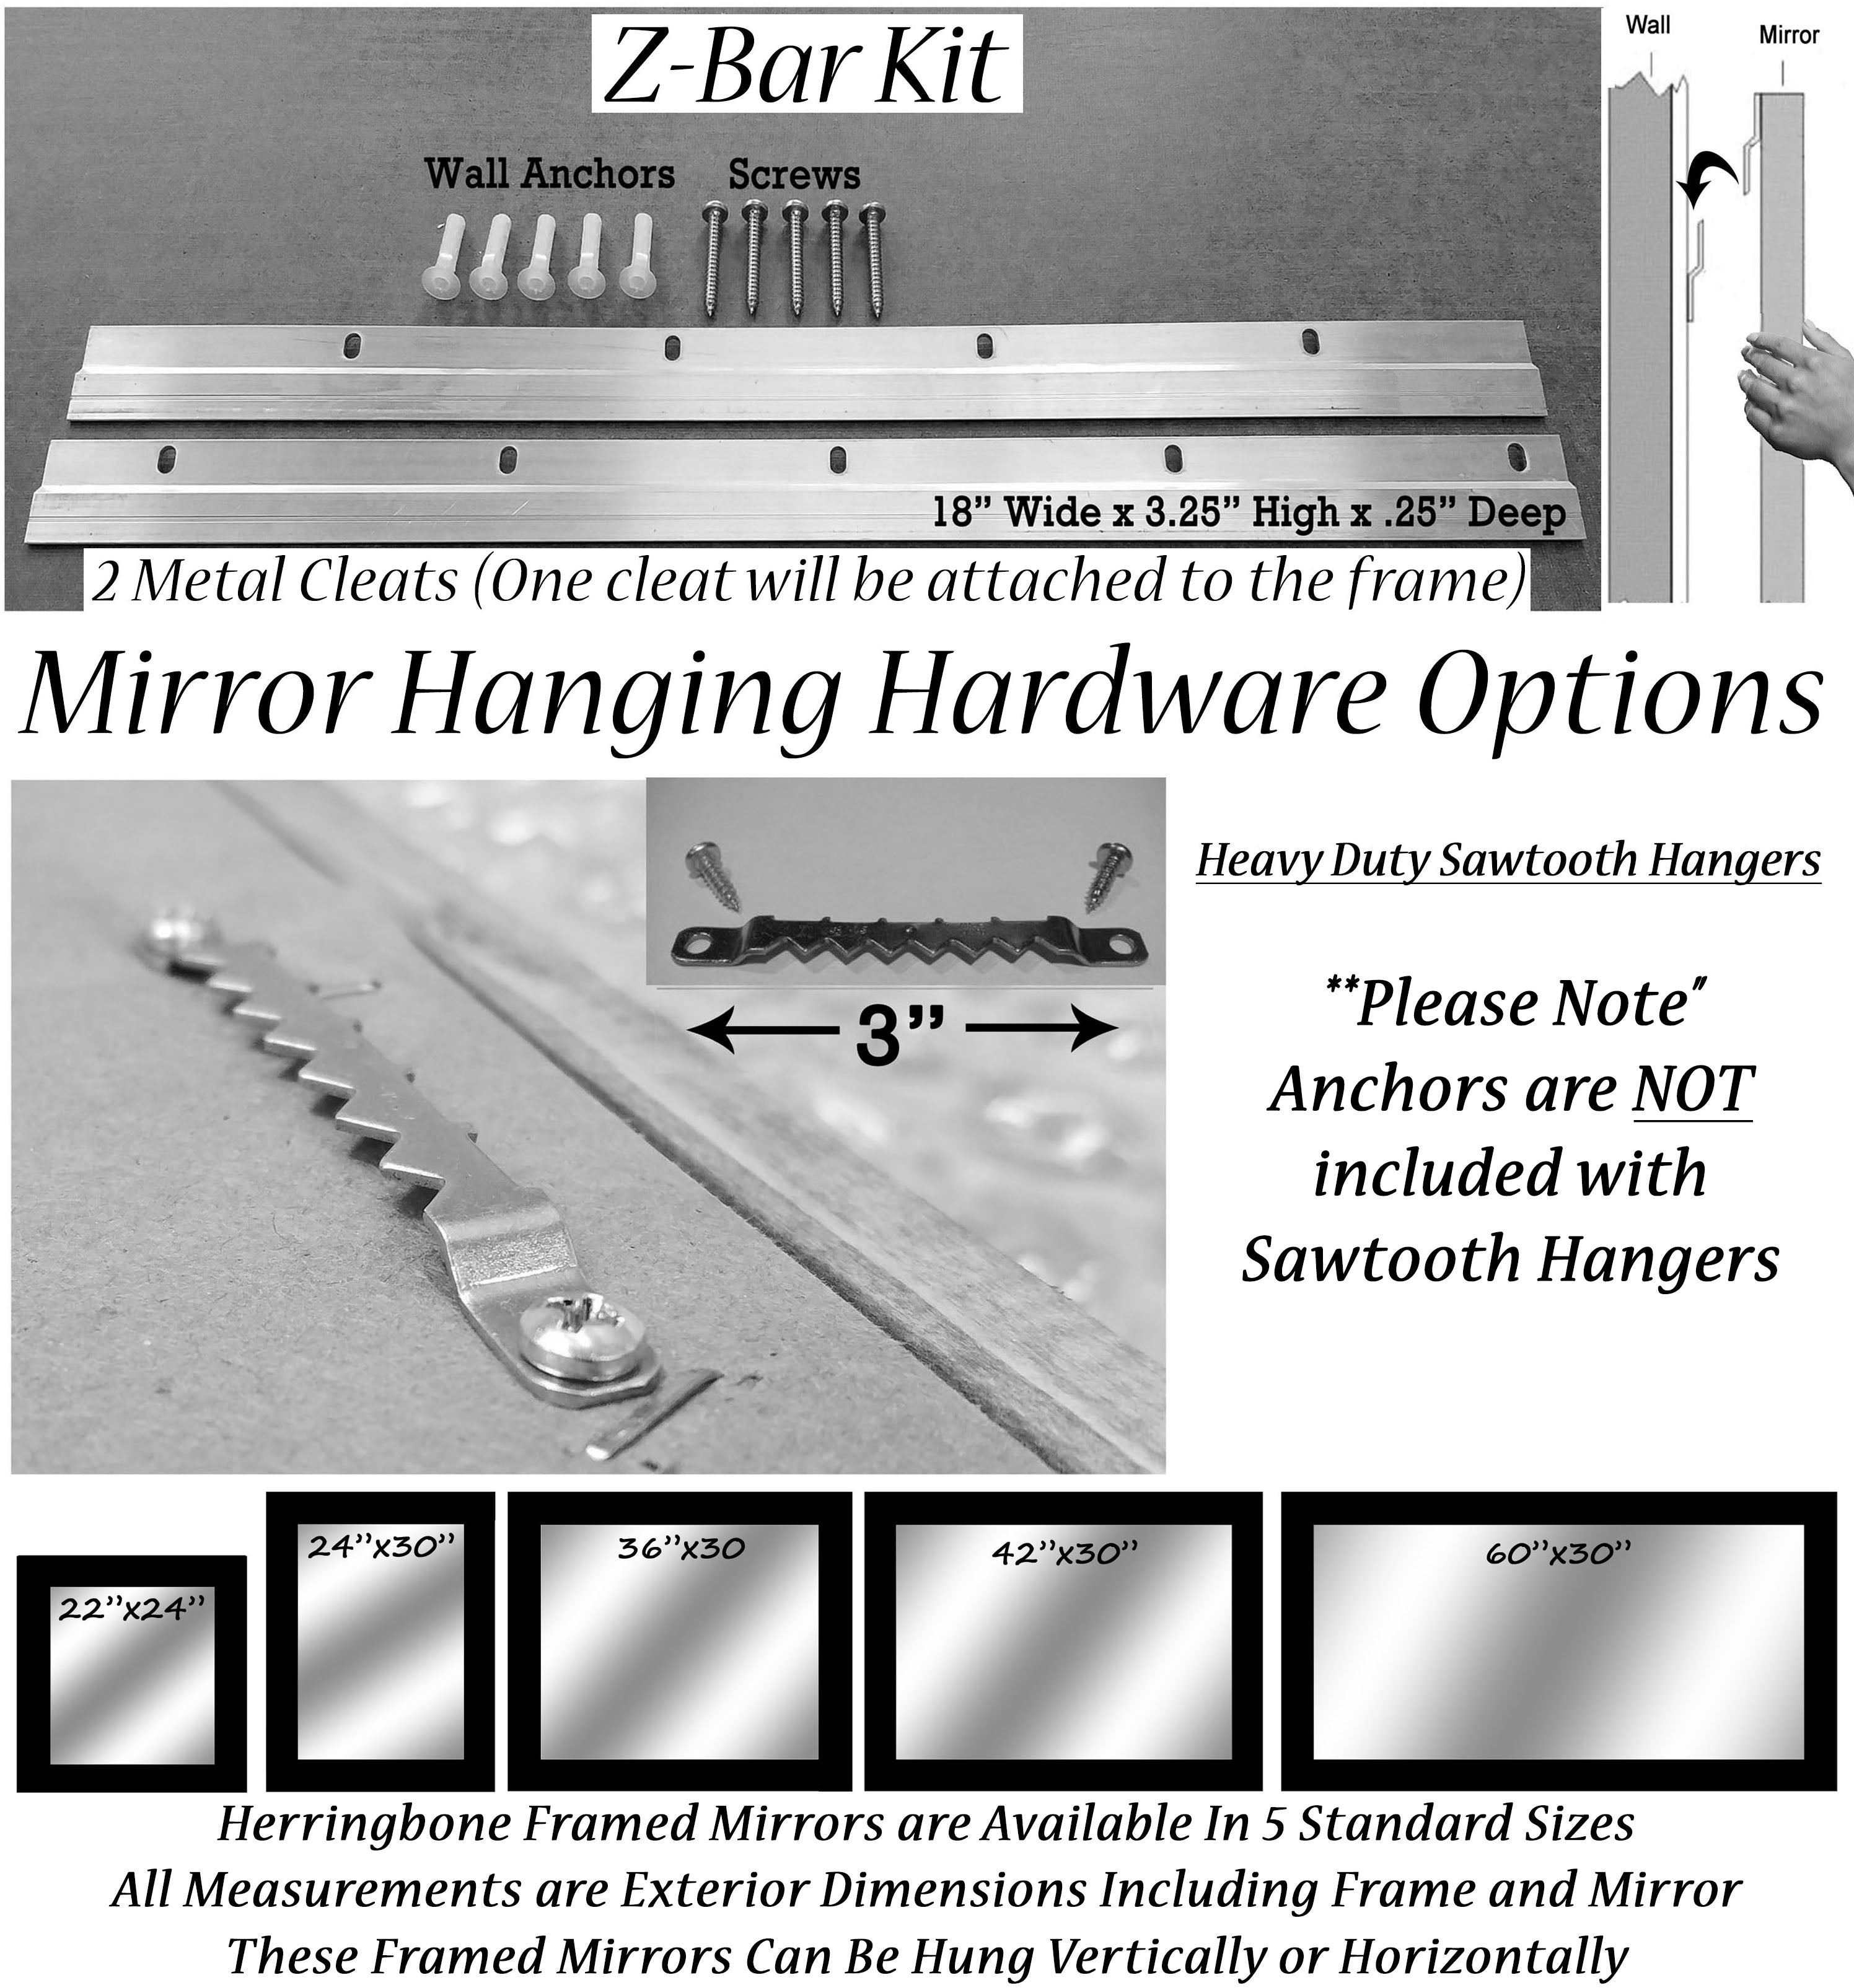 Herringbone Mirror Sizes & Hanging Hardware